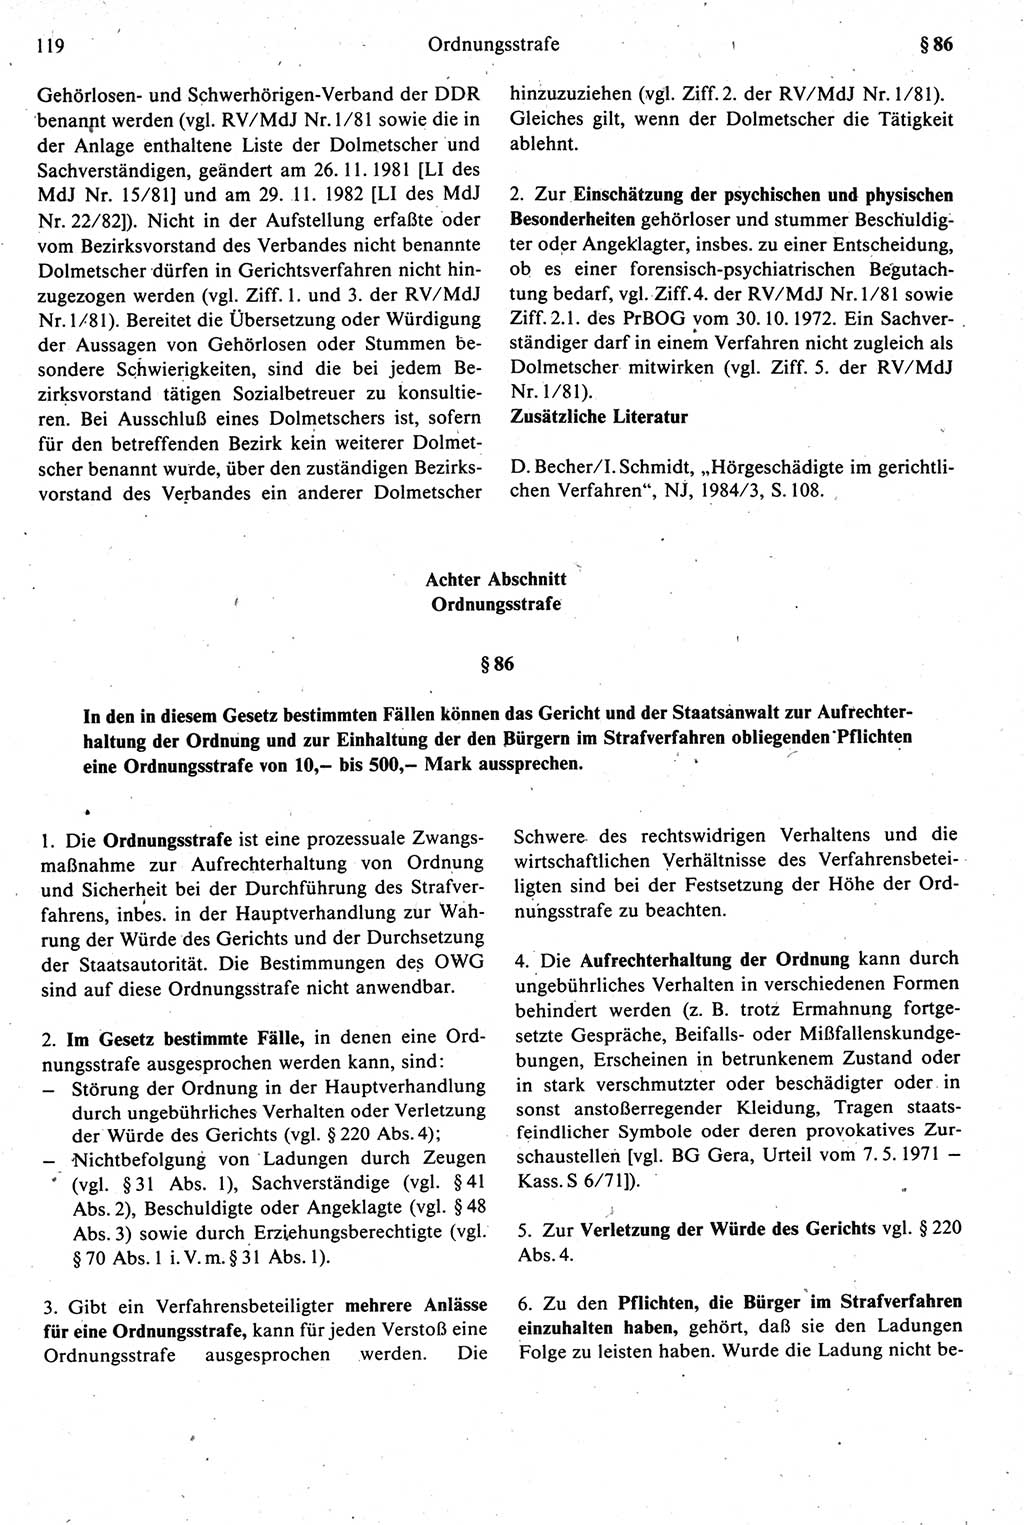 Strafprozeßrecht der DDR [Deutsche Demokratische Republik], Kommentar zur Strafprozeßordnung (StPO) 1987, Seite 119 (Strafprozeßr. DDR Komm. StPO 1987, S. 119)